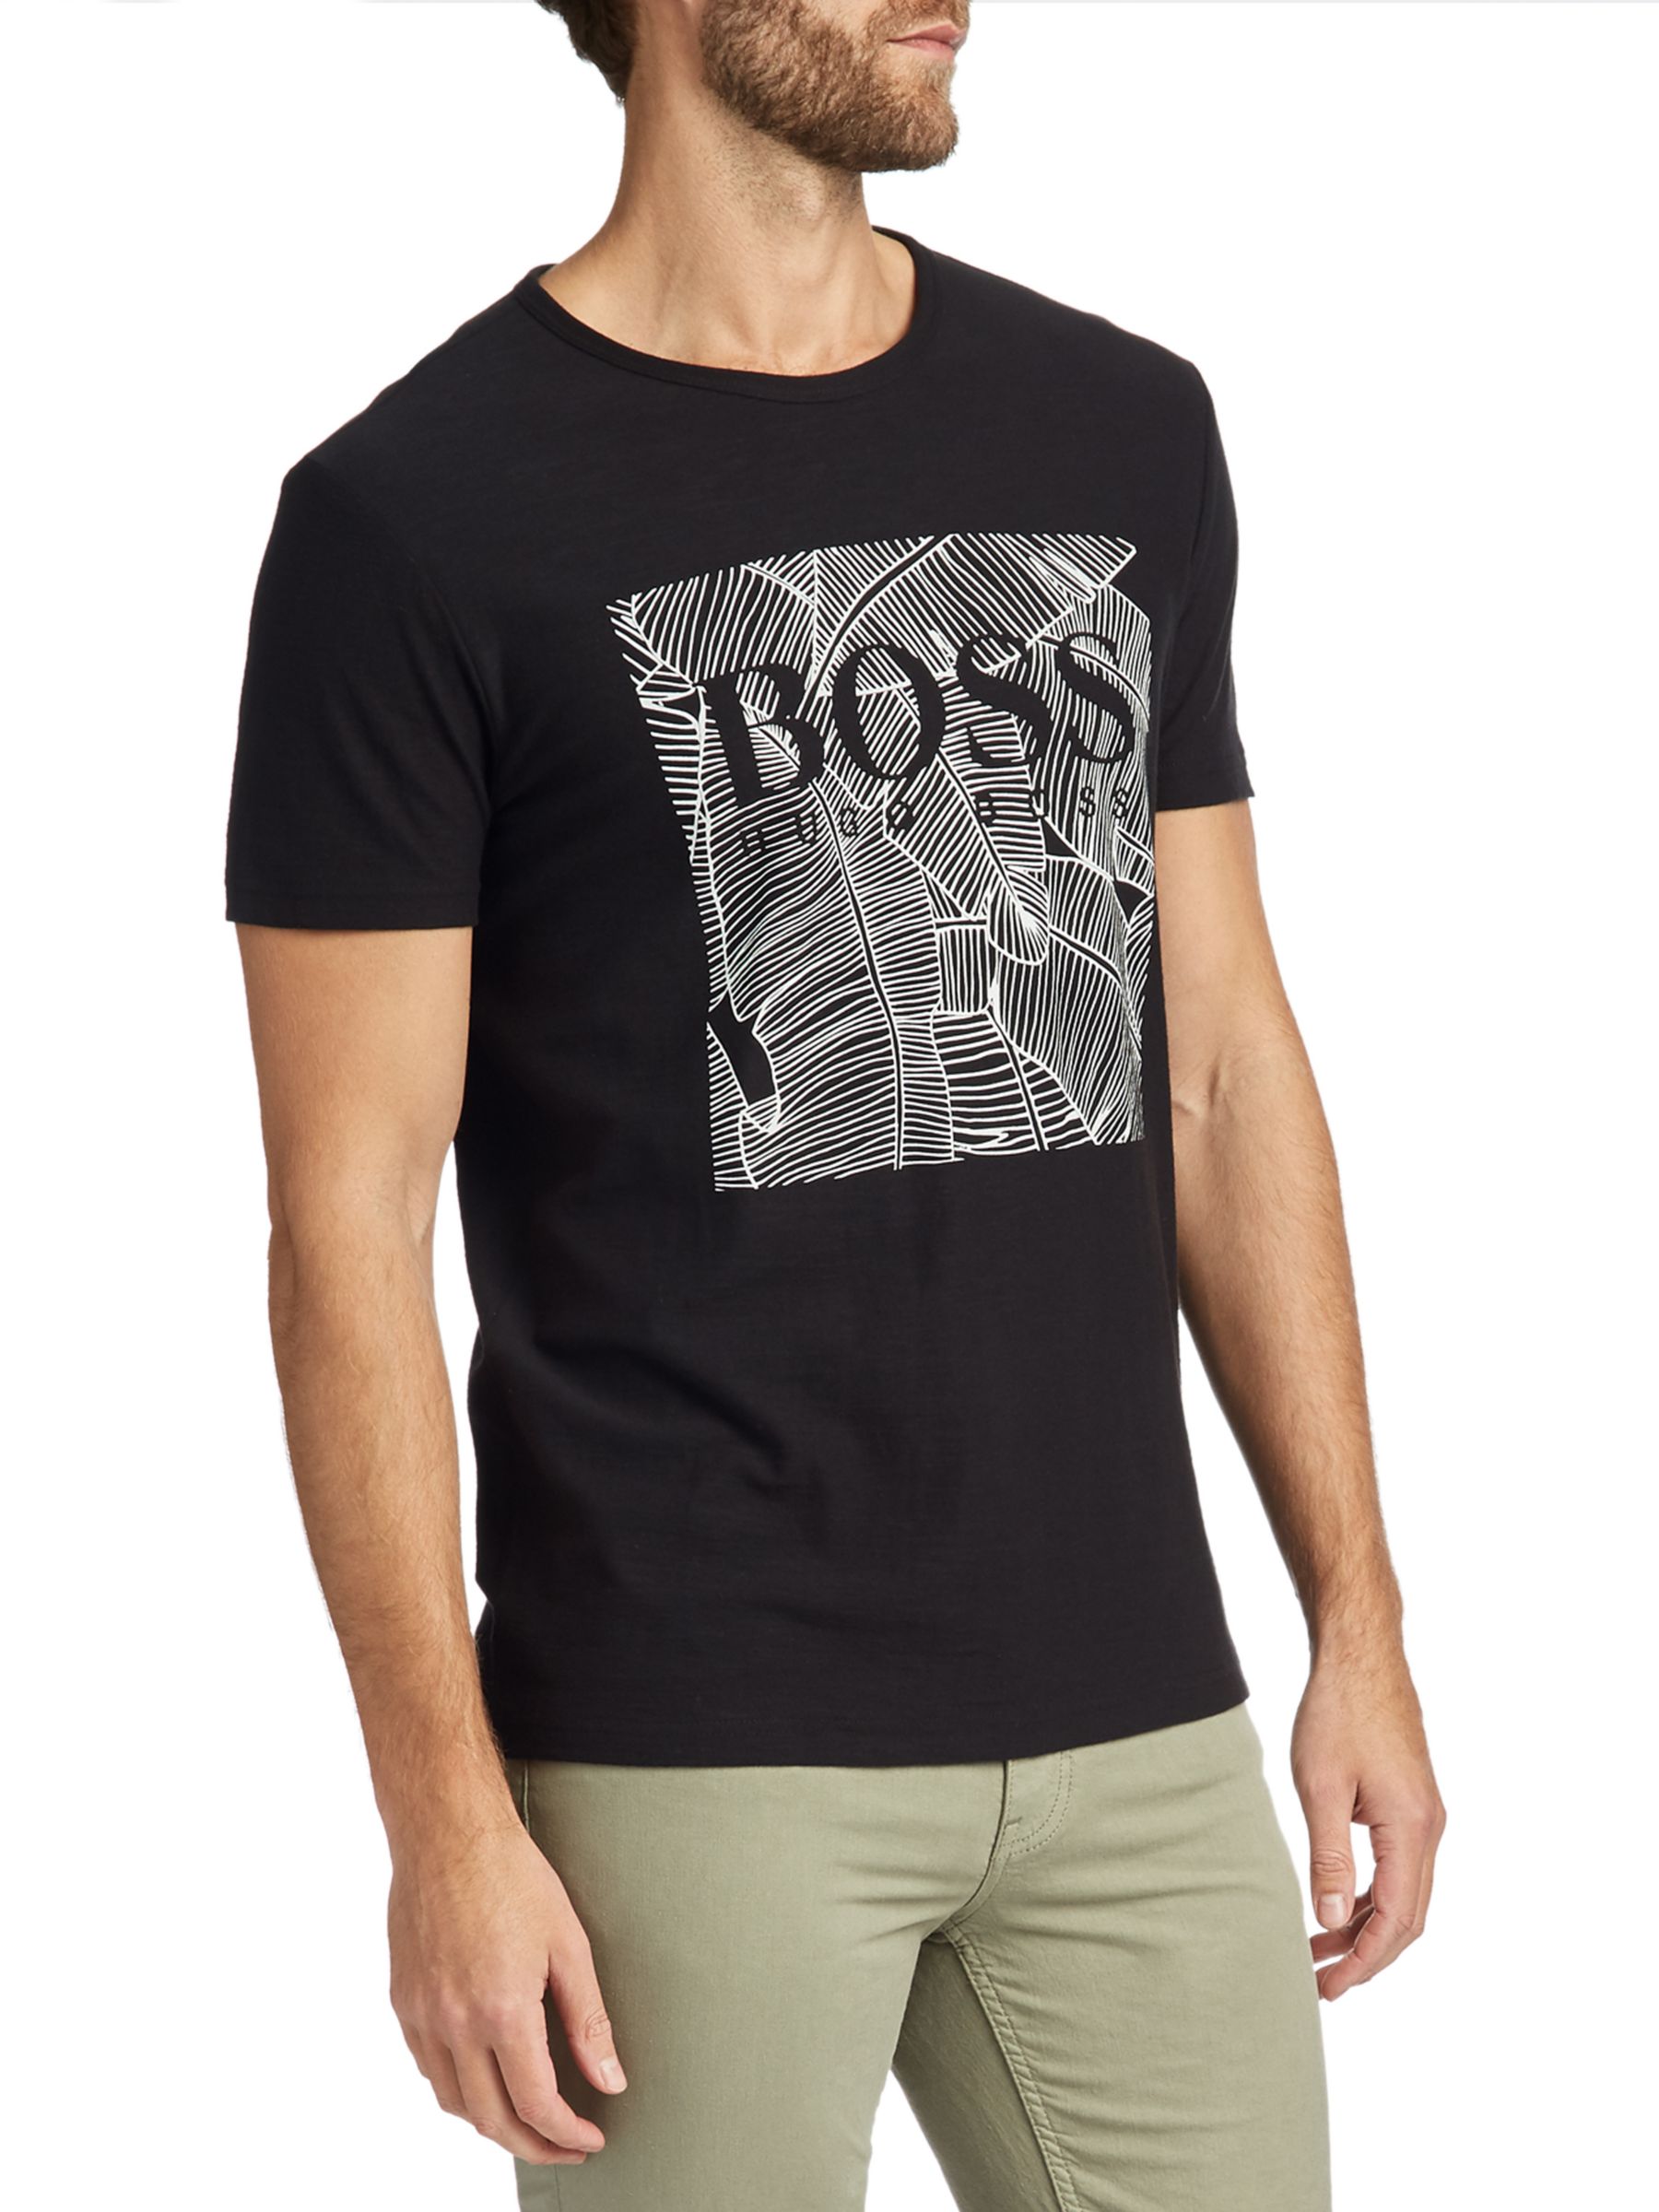 BOSS Tarit Graphic T-Shirt at John 